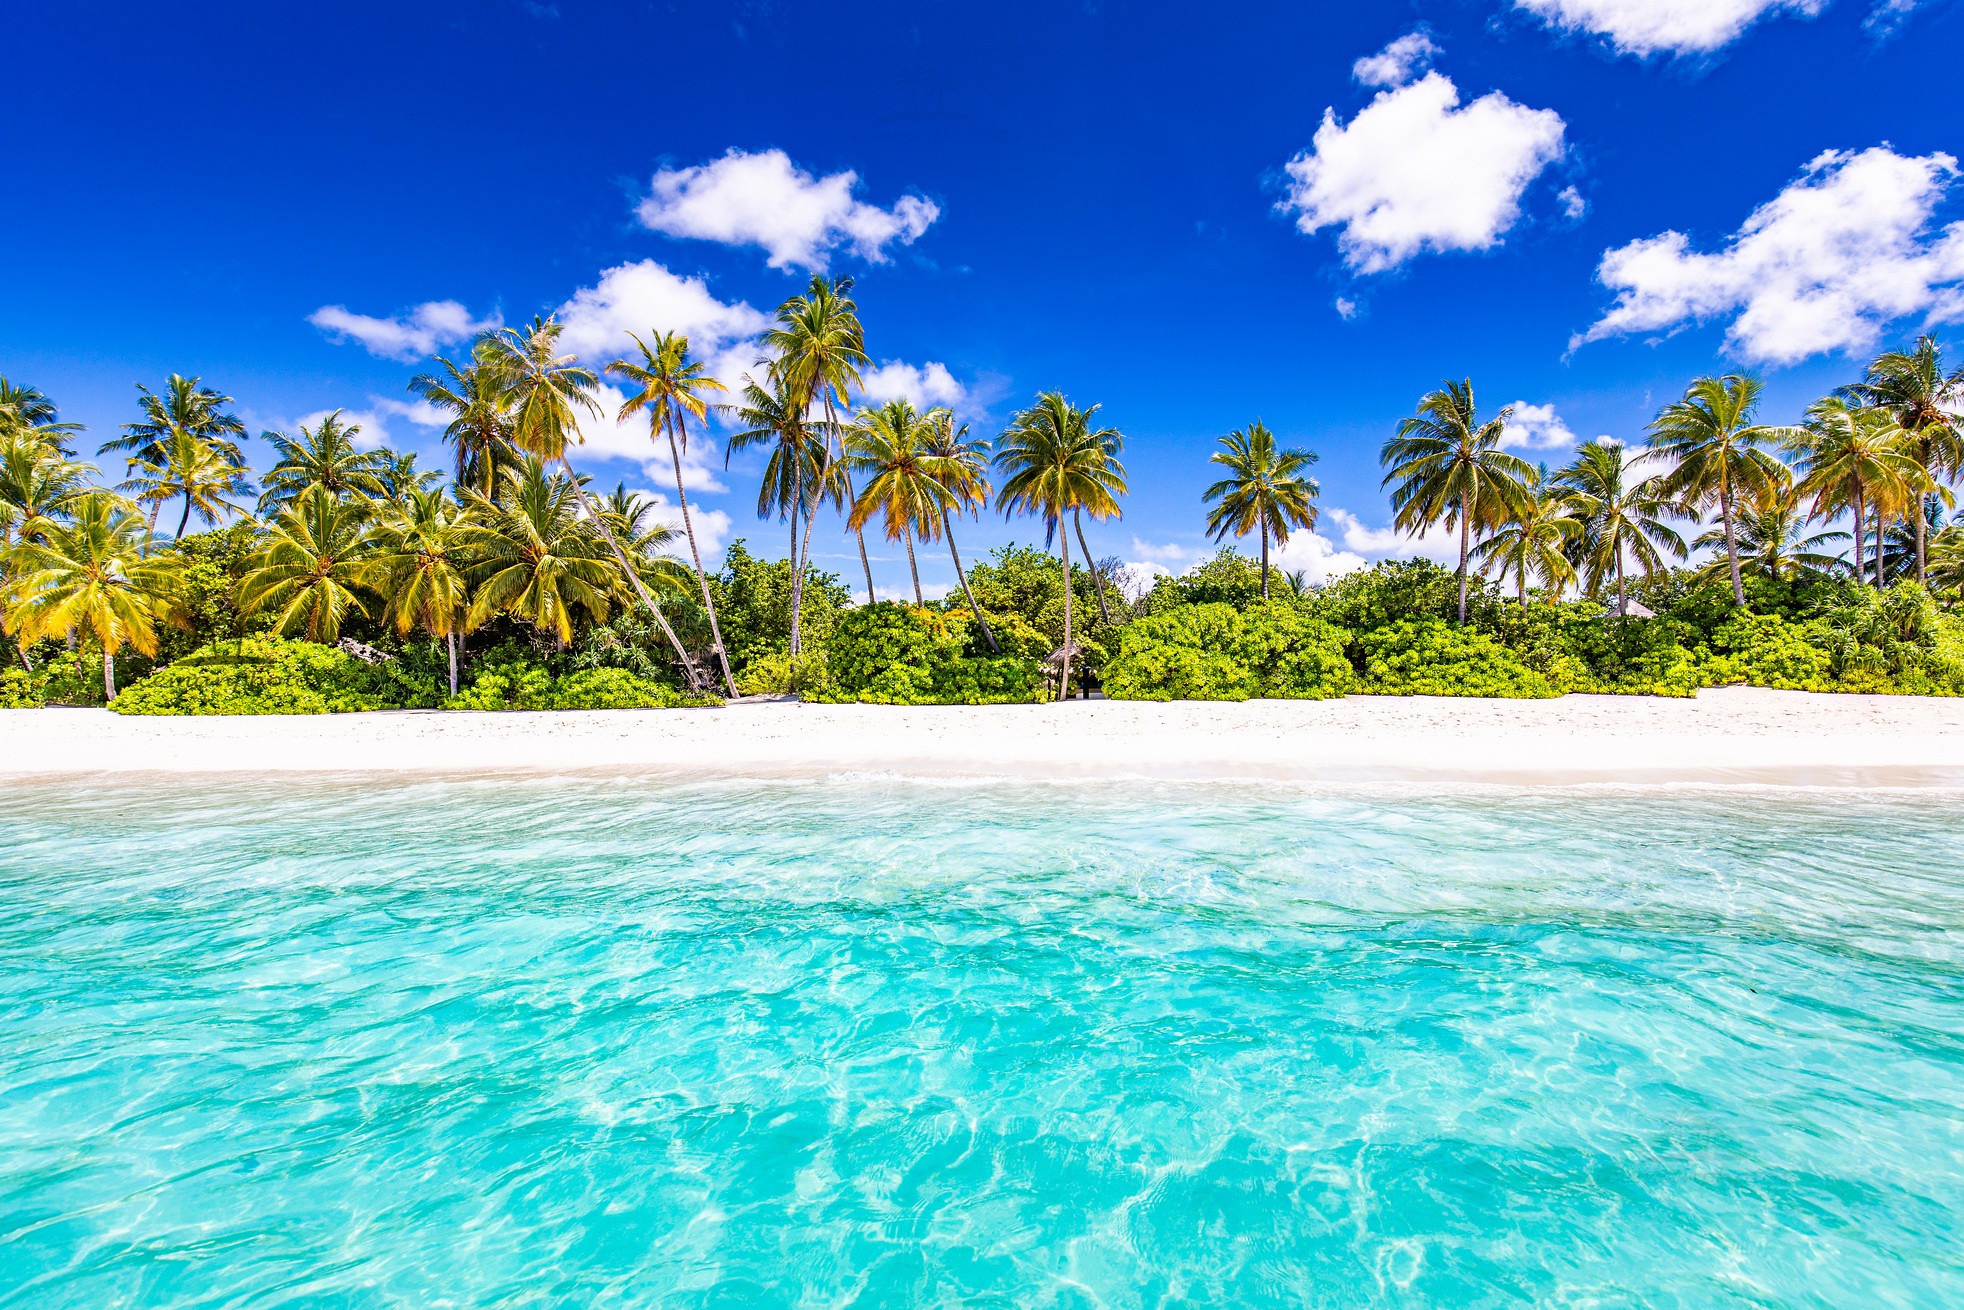 Скачать обои бесплатно Пляж, Пальмы, Океан, Сейшелы, Земля/природа картинка на рабочий стол ПК